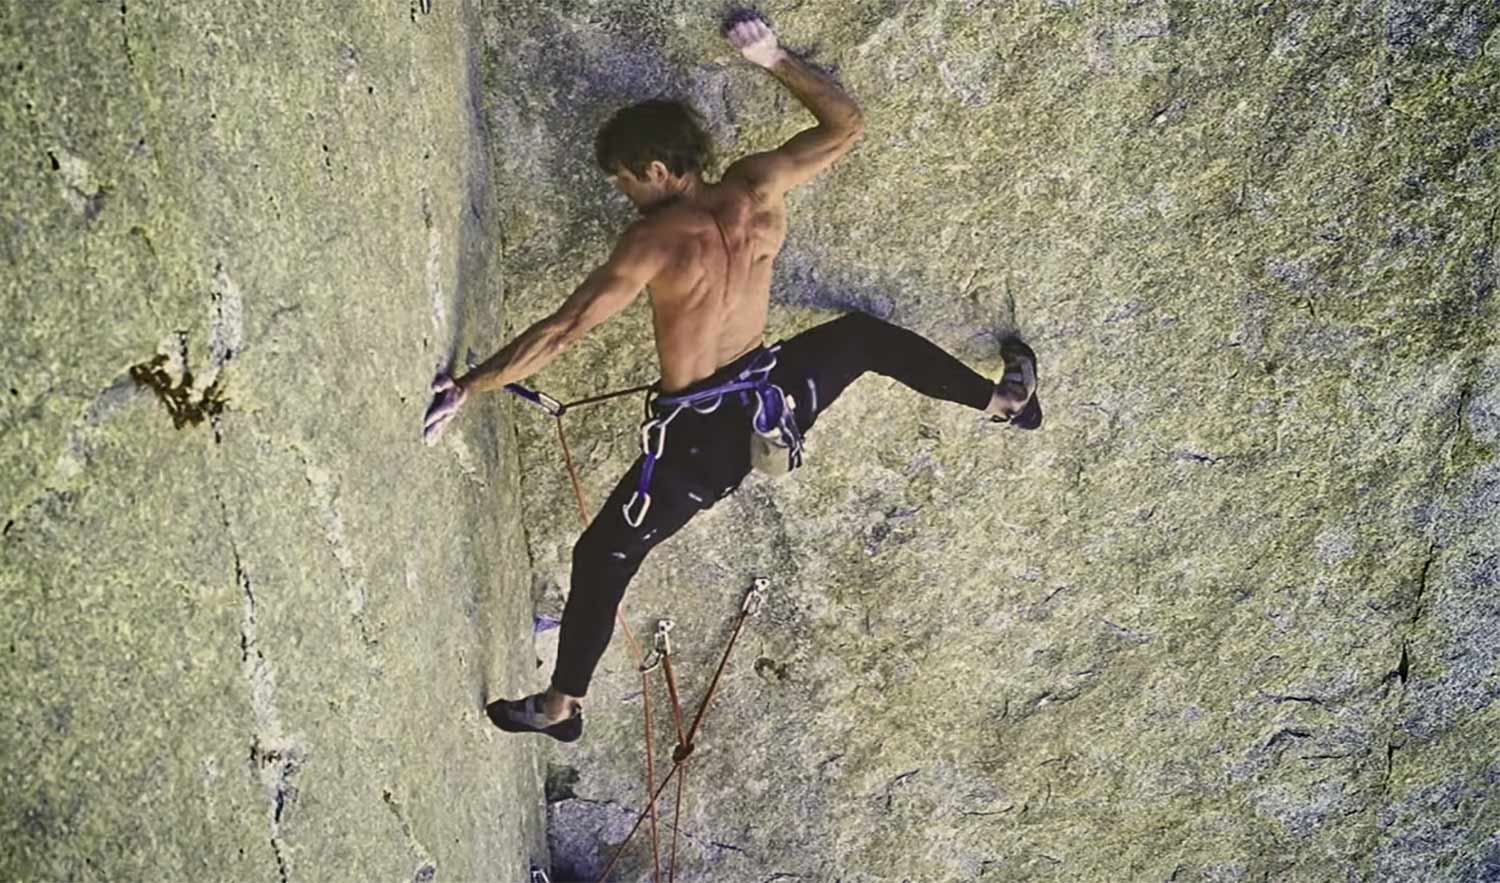 Peter Croft rock climbing highlights